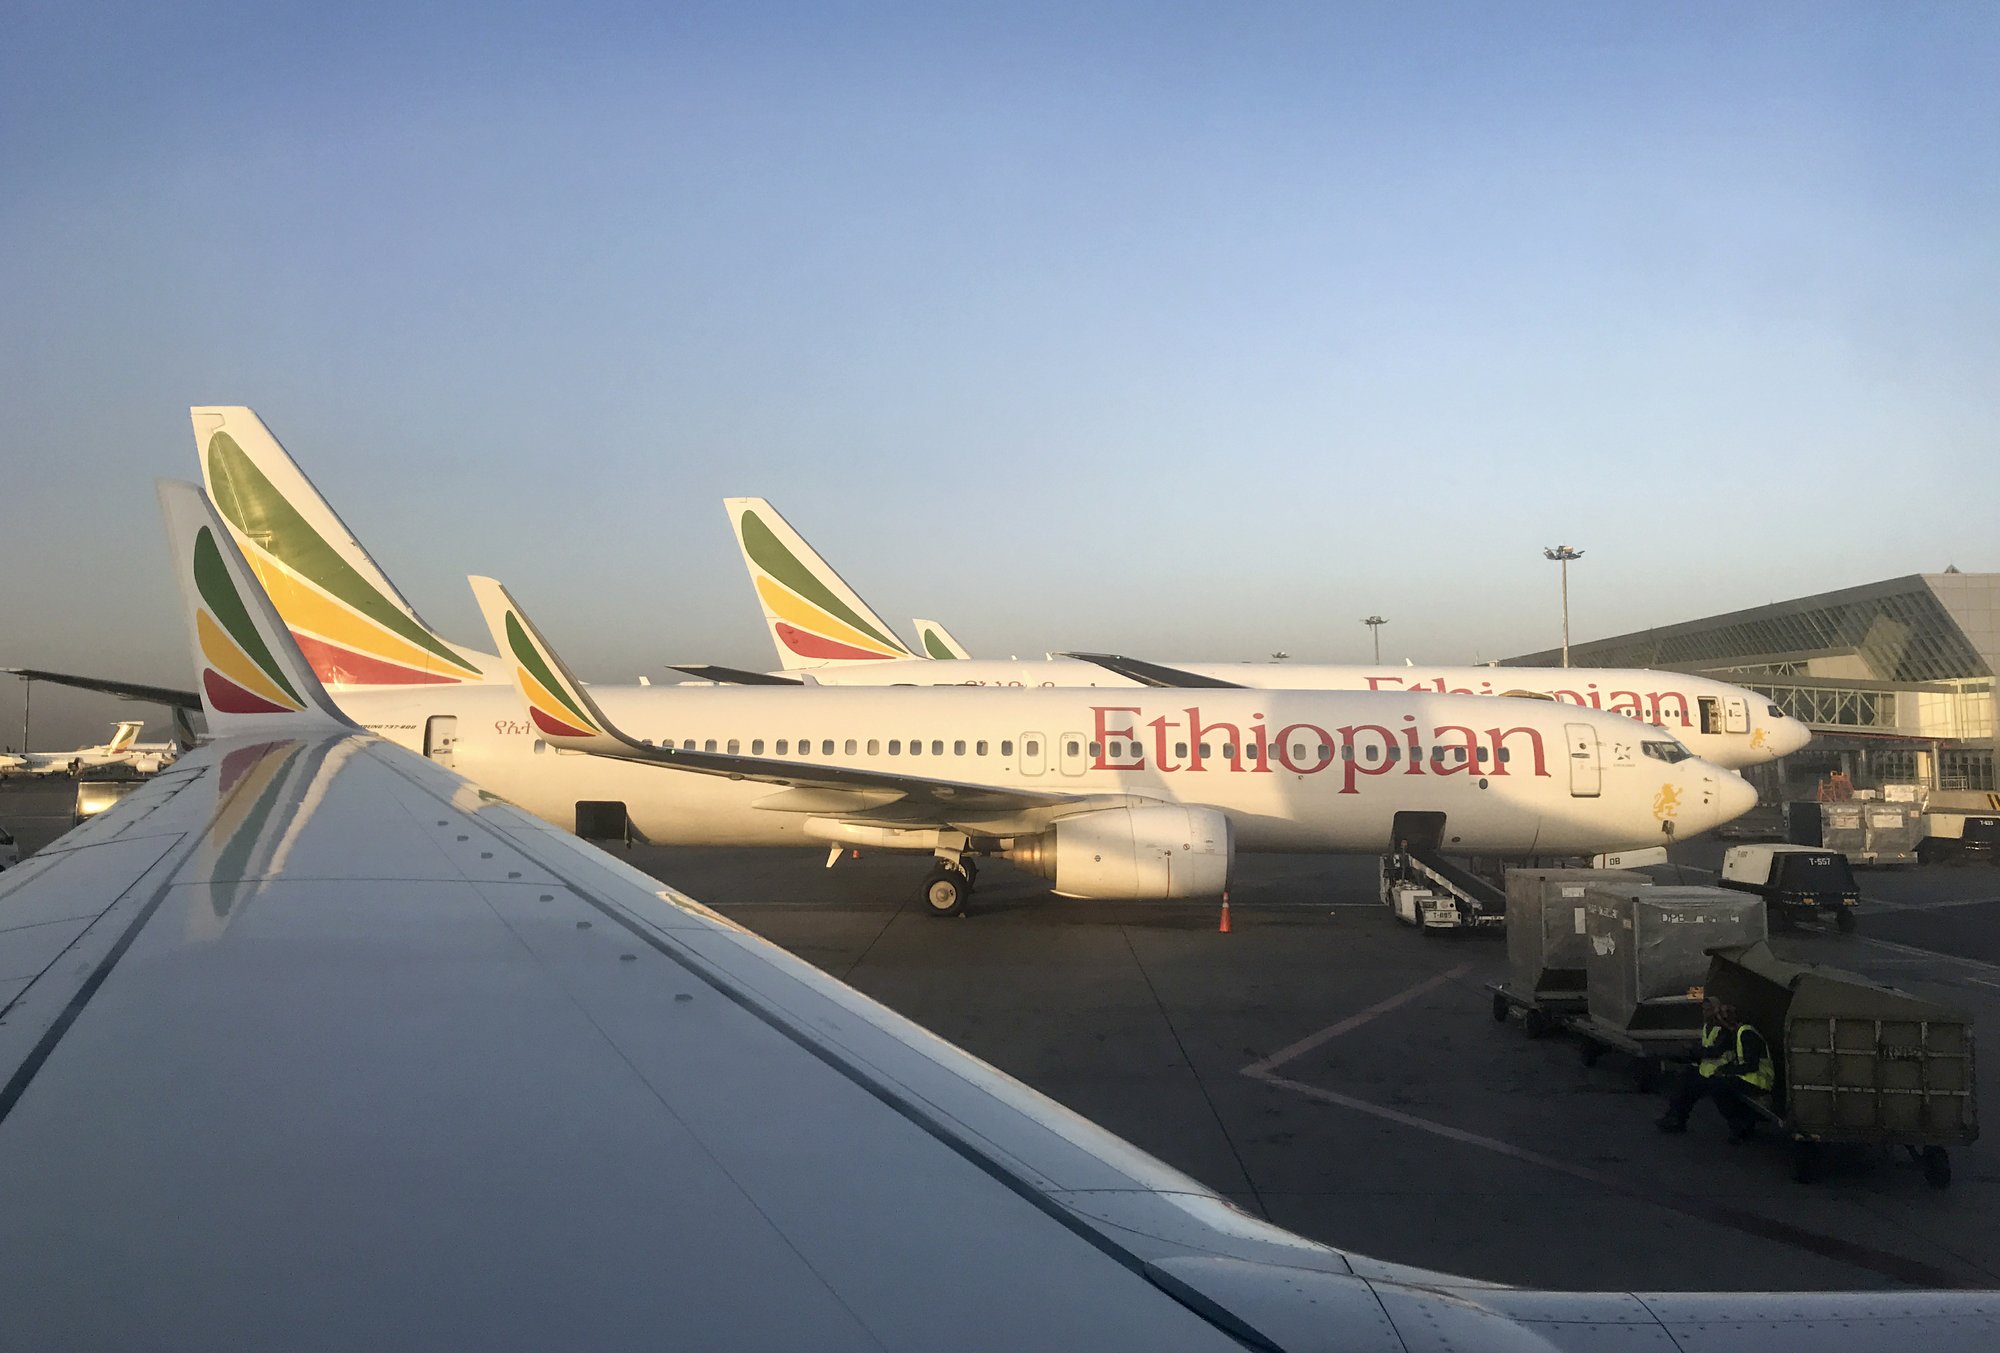 Ethiopian Airlines.jpg